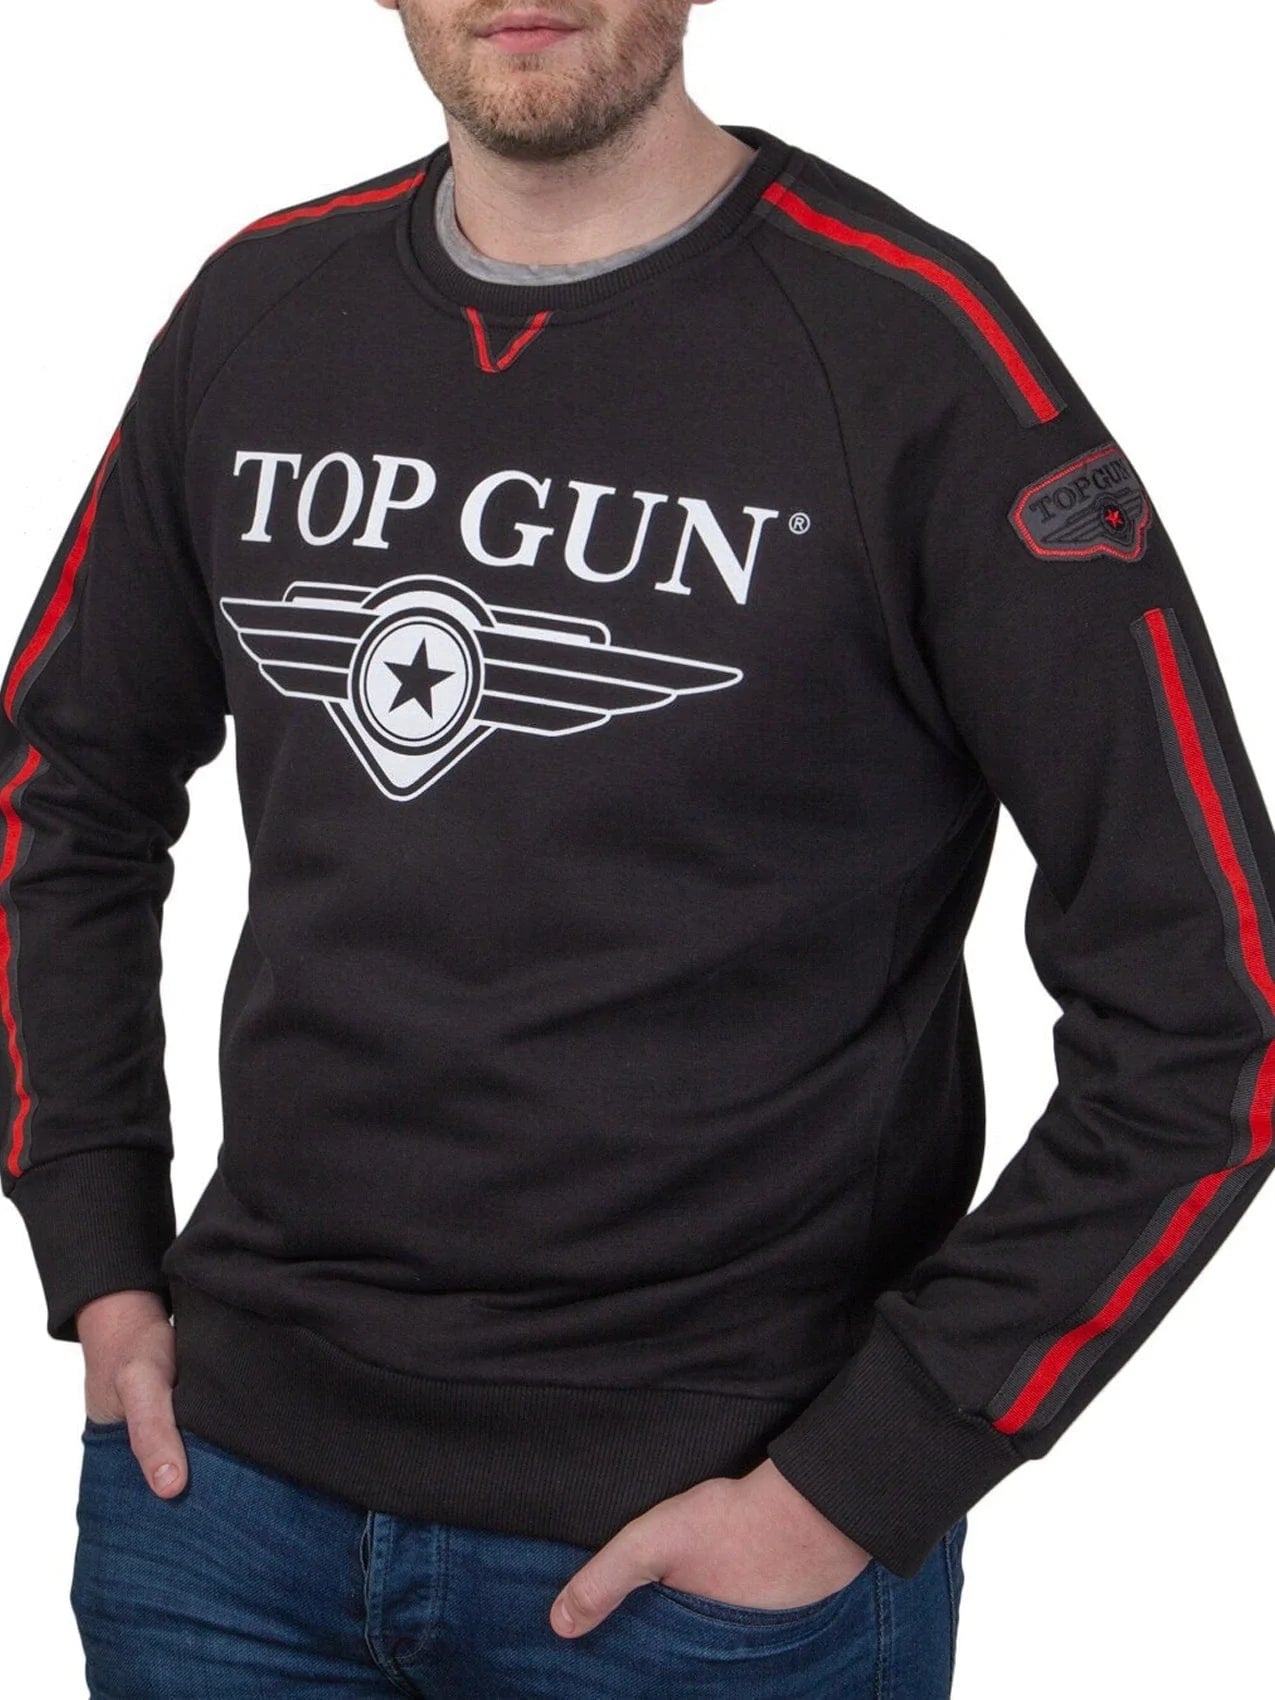 Top GunCrew Neck Sweatshirt "Streak Logo" with Patches, Black